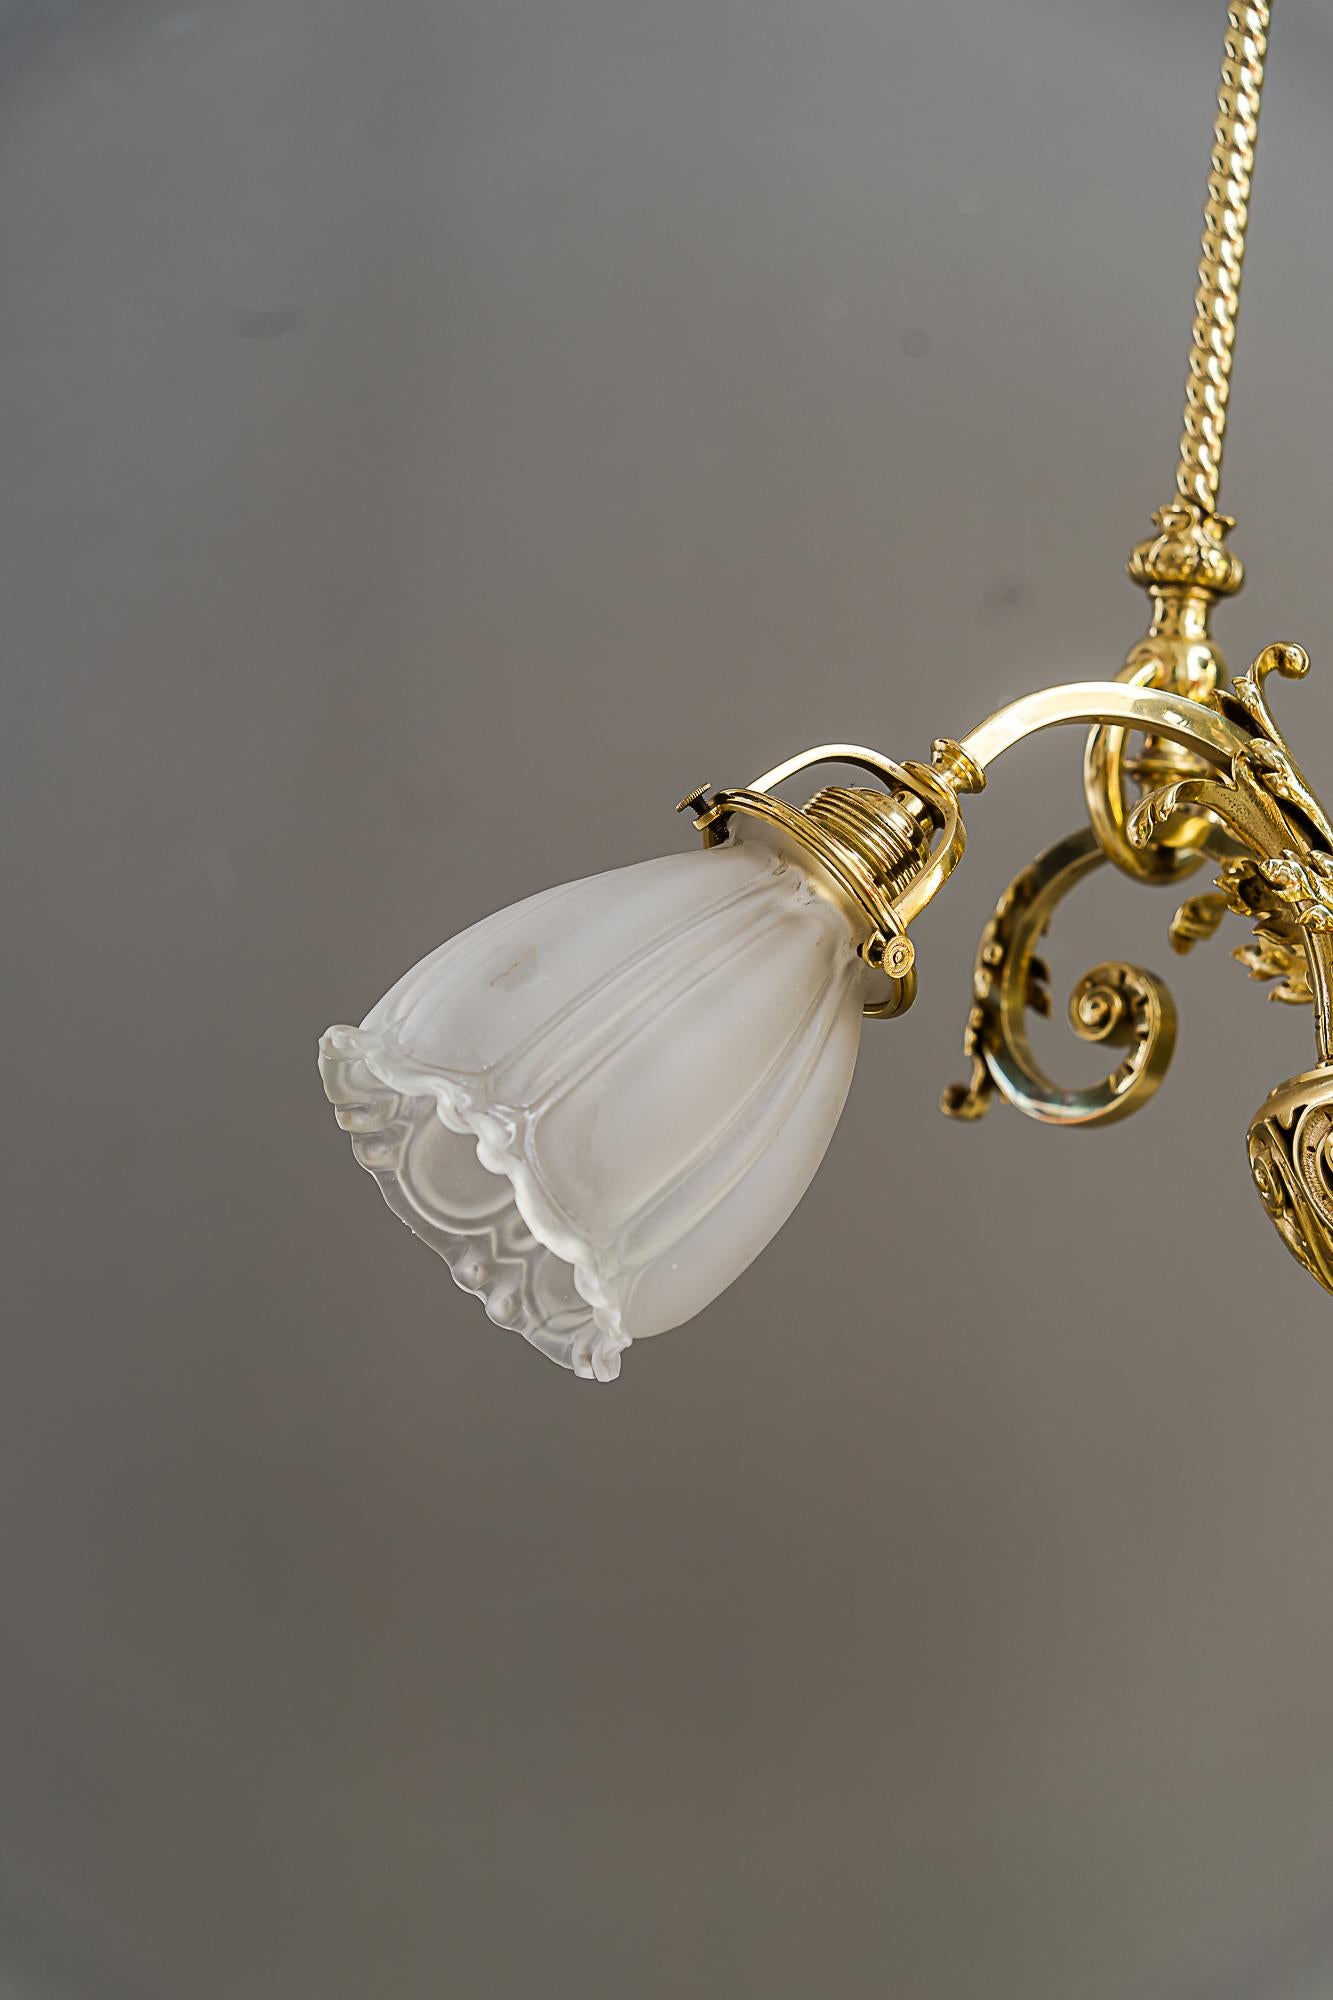 Historic chandelier vienna around 1890s with original antique glass shades For Sale 7